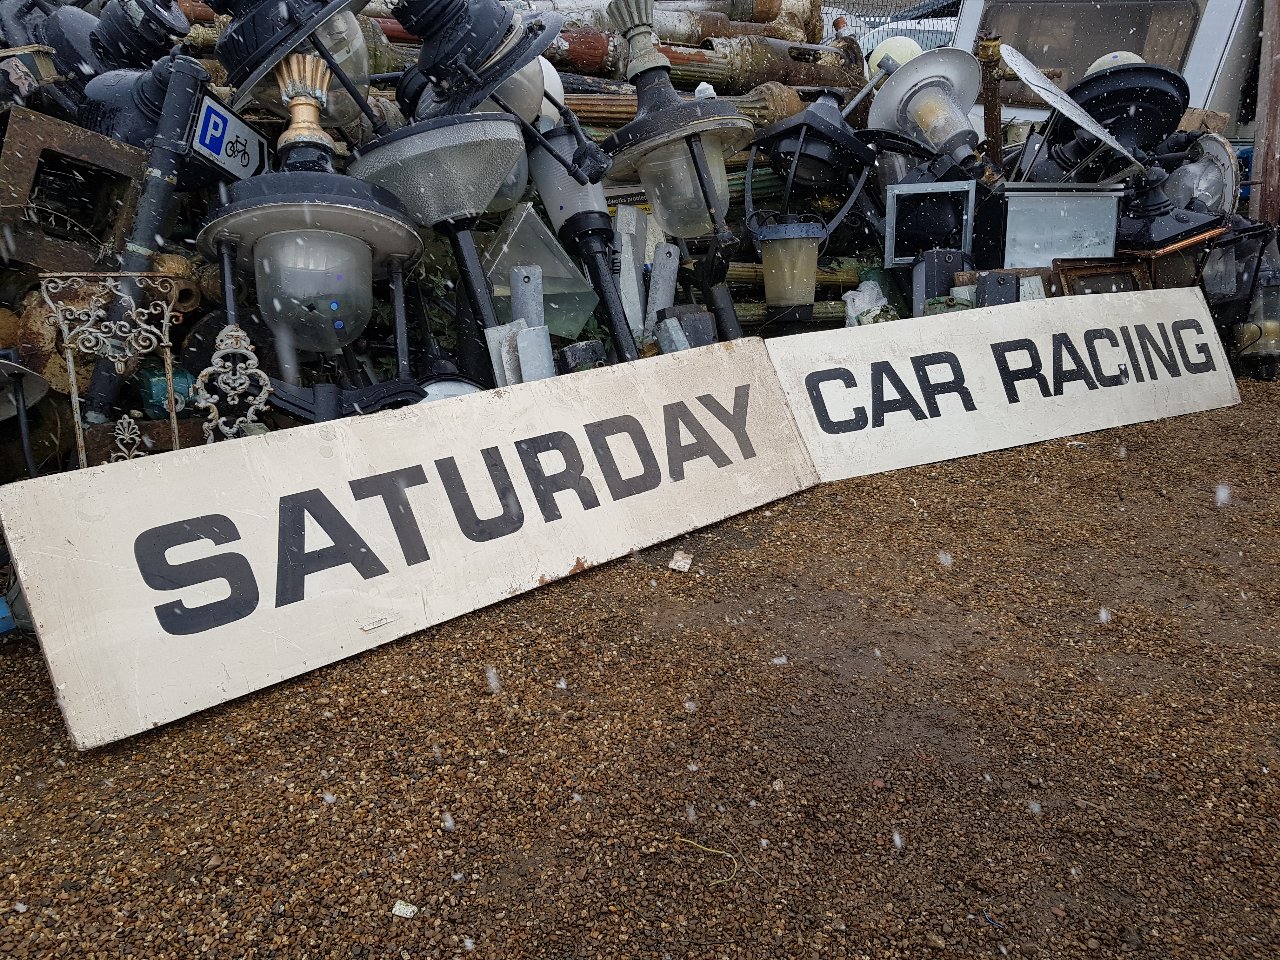 Wimbledon Stadium, Car Racing Board